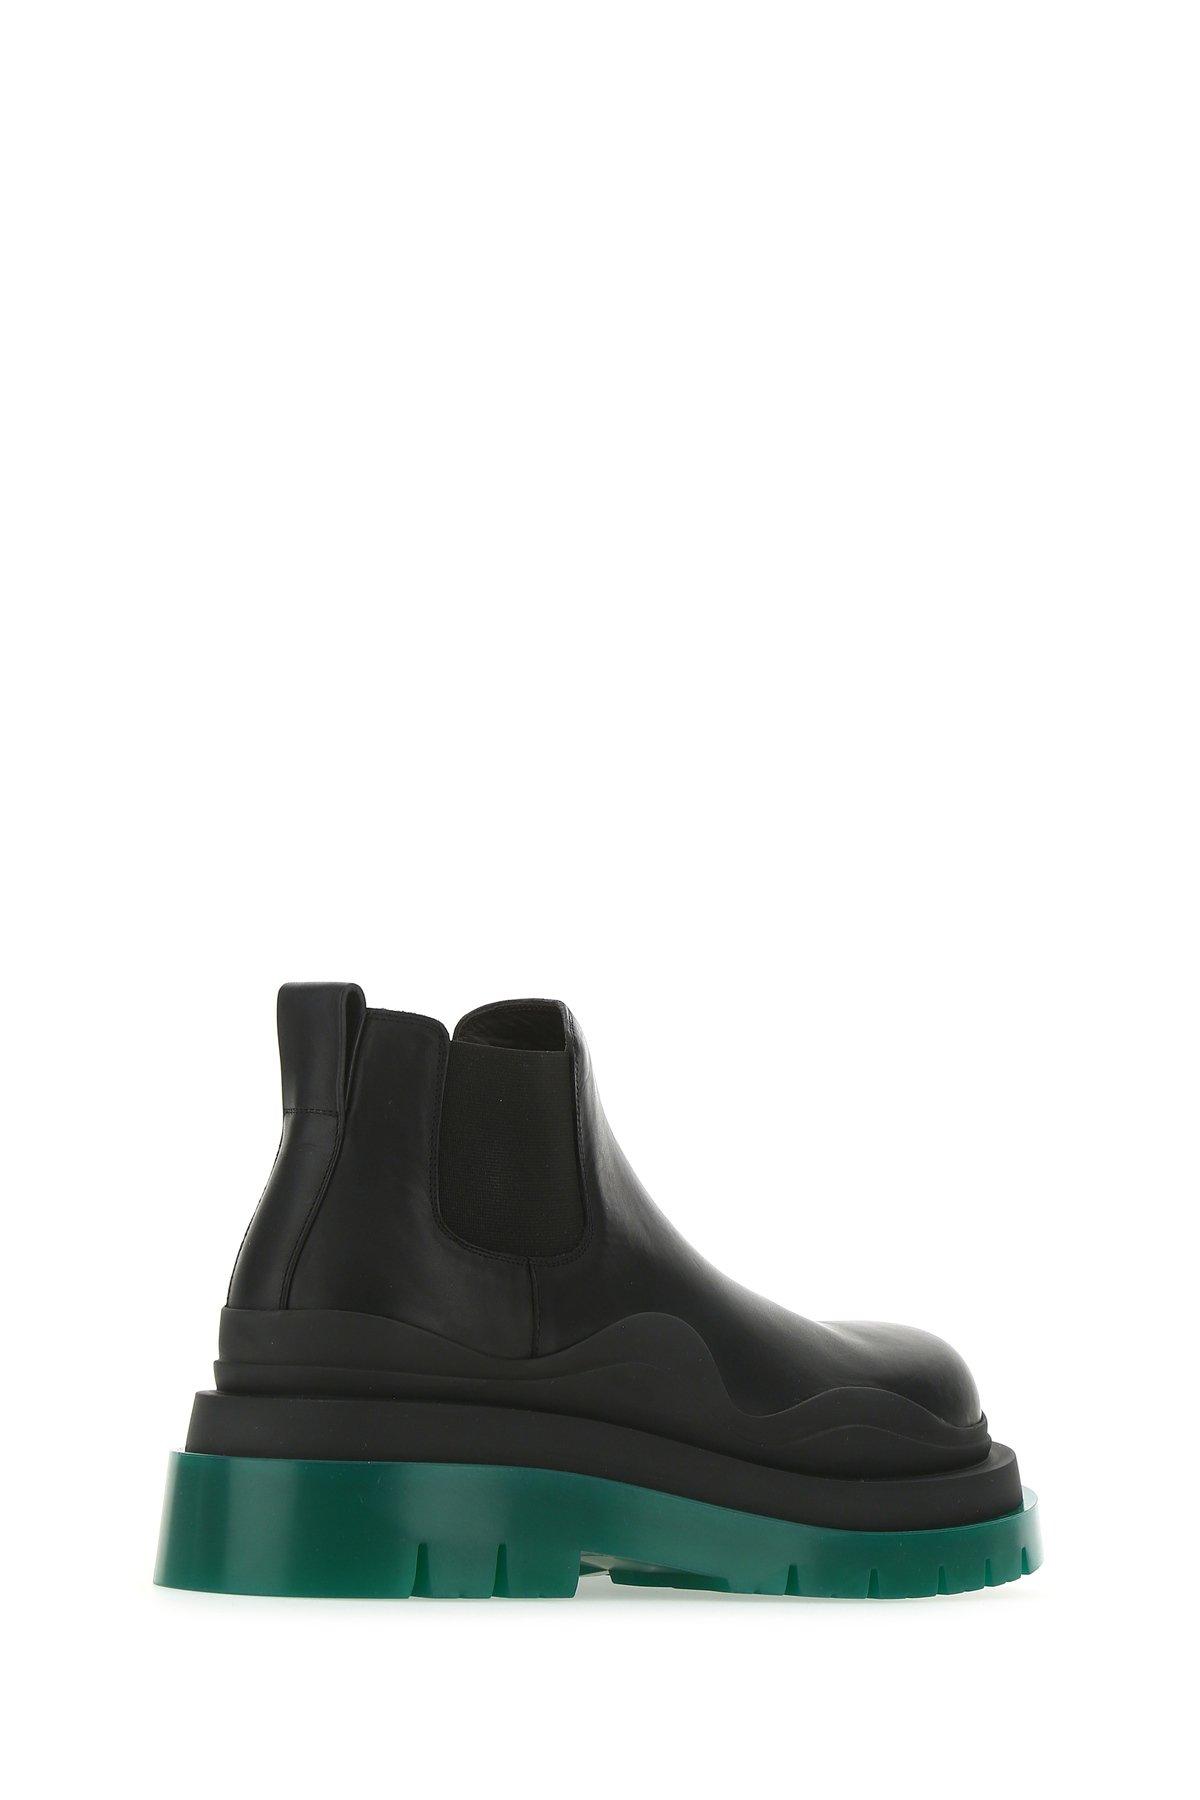 Bottega Veneta Tire Boots in Black Green (Black) for Men - Save 25 